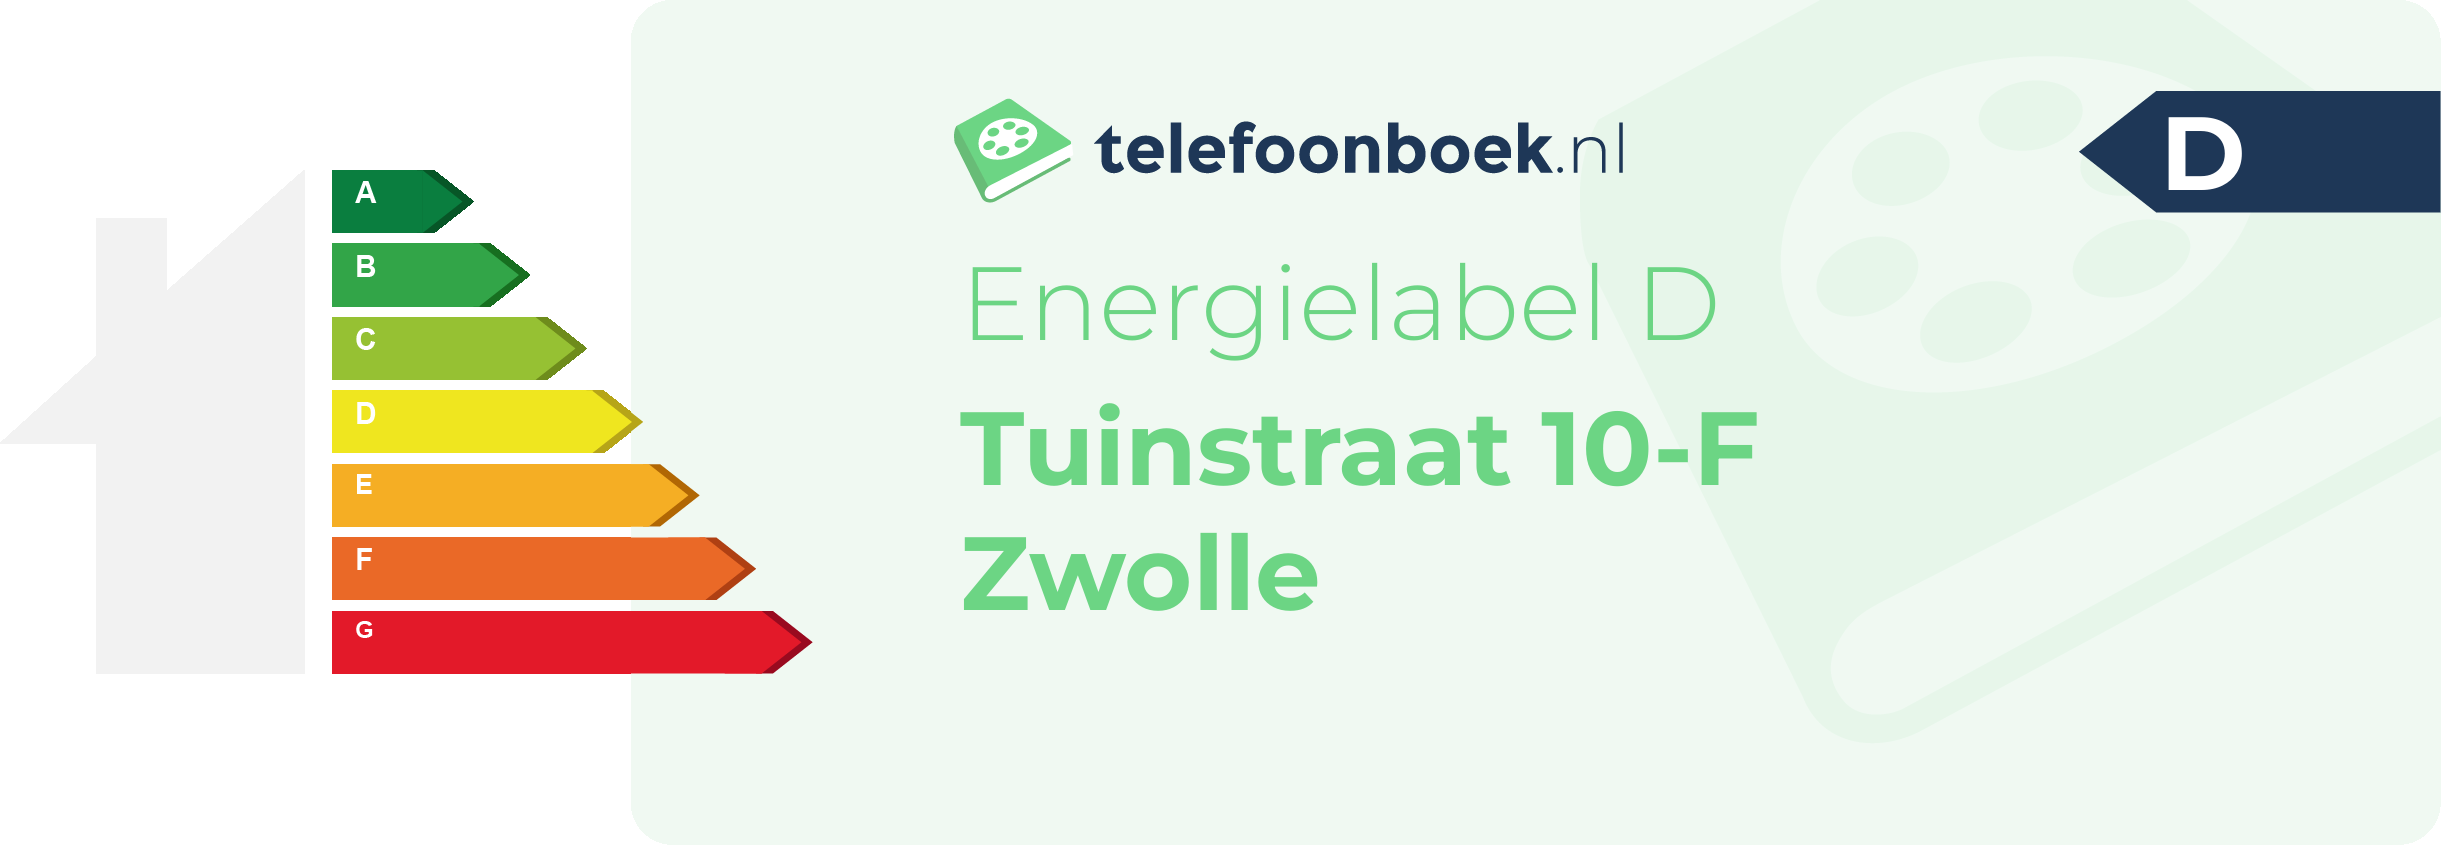 Energielabel Tuinstraat 10-F Zwolle